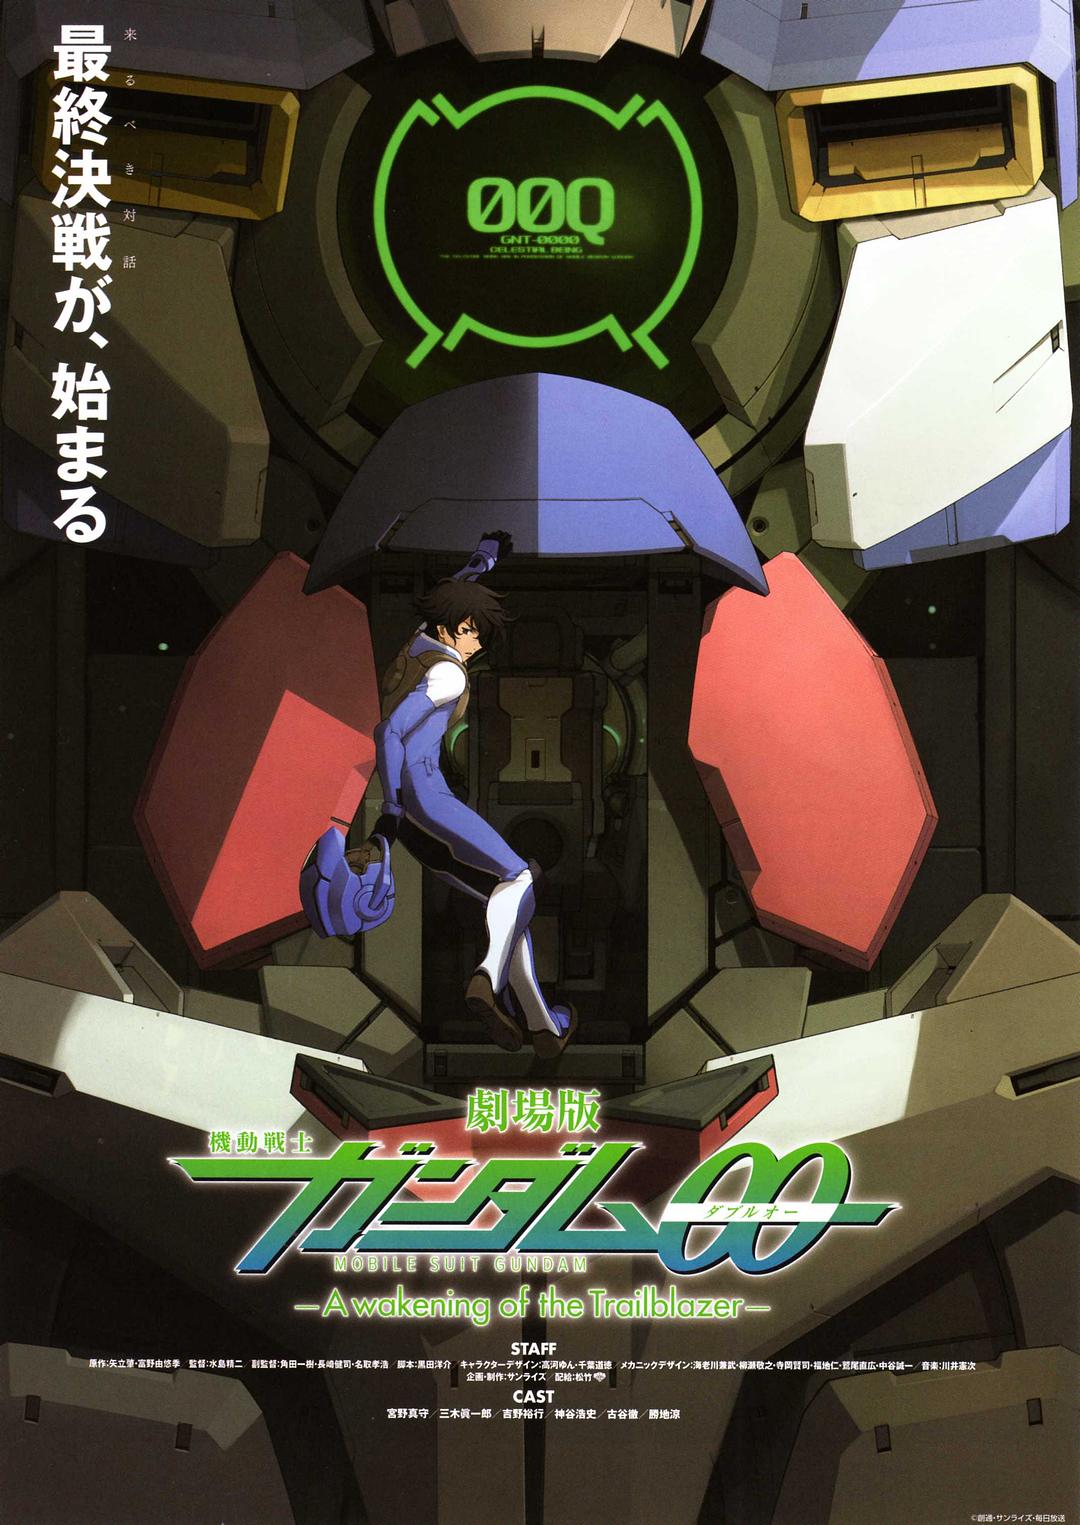 戏院版 灵活战士高达00 先驱者的醒觉 Mobile.Suit.Gundam.00.A.Wakening.Of.The.Trailblazer.2010.DUBBED.1080p.BluRay.x264-PFa 5.46GB-1.png